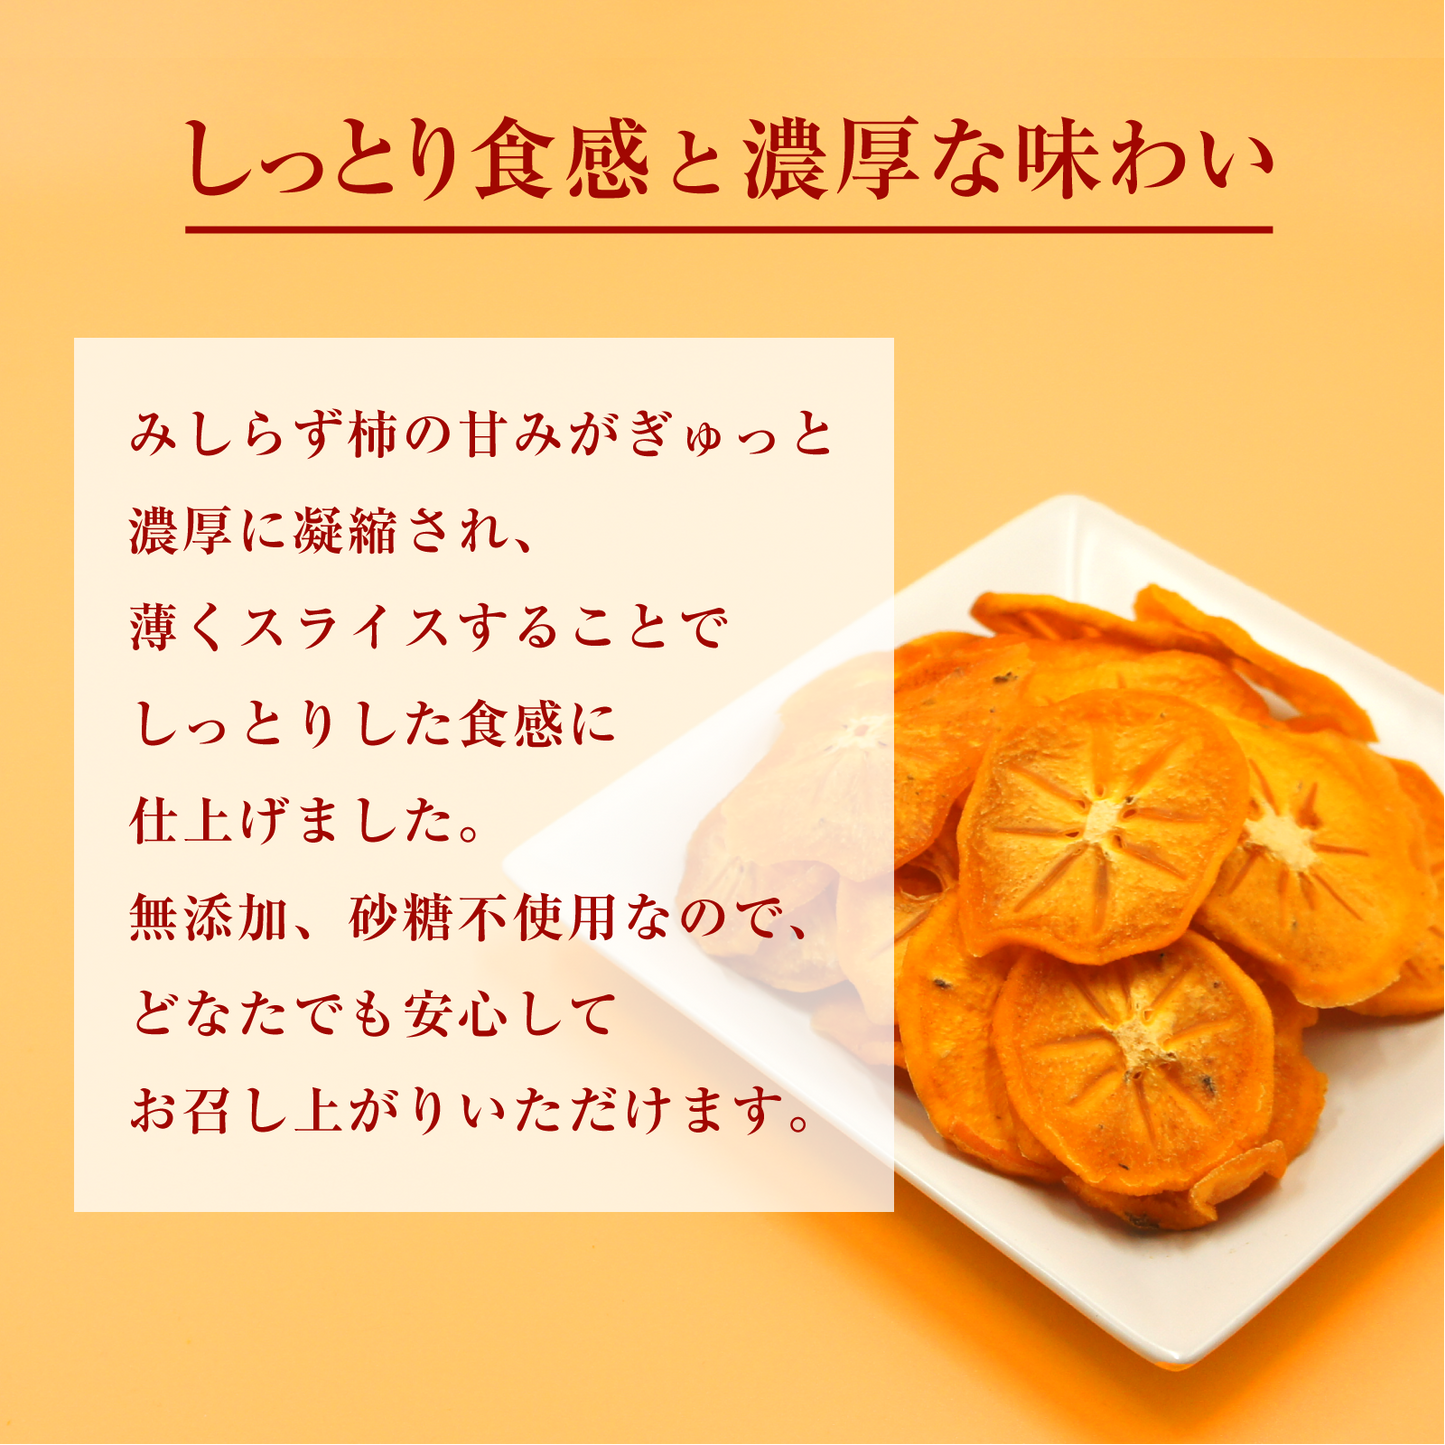 【無添加・砂糖不使用】会津みしらず柿チップス